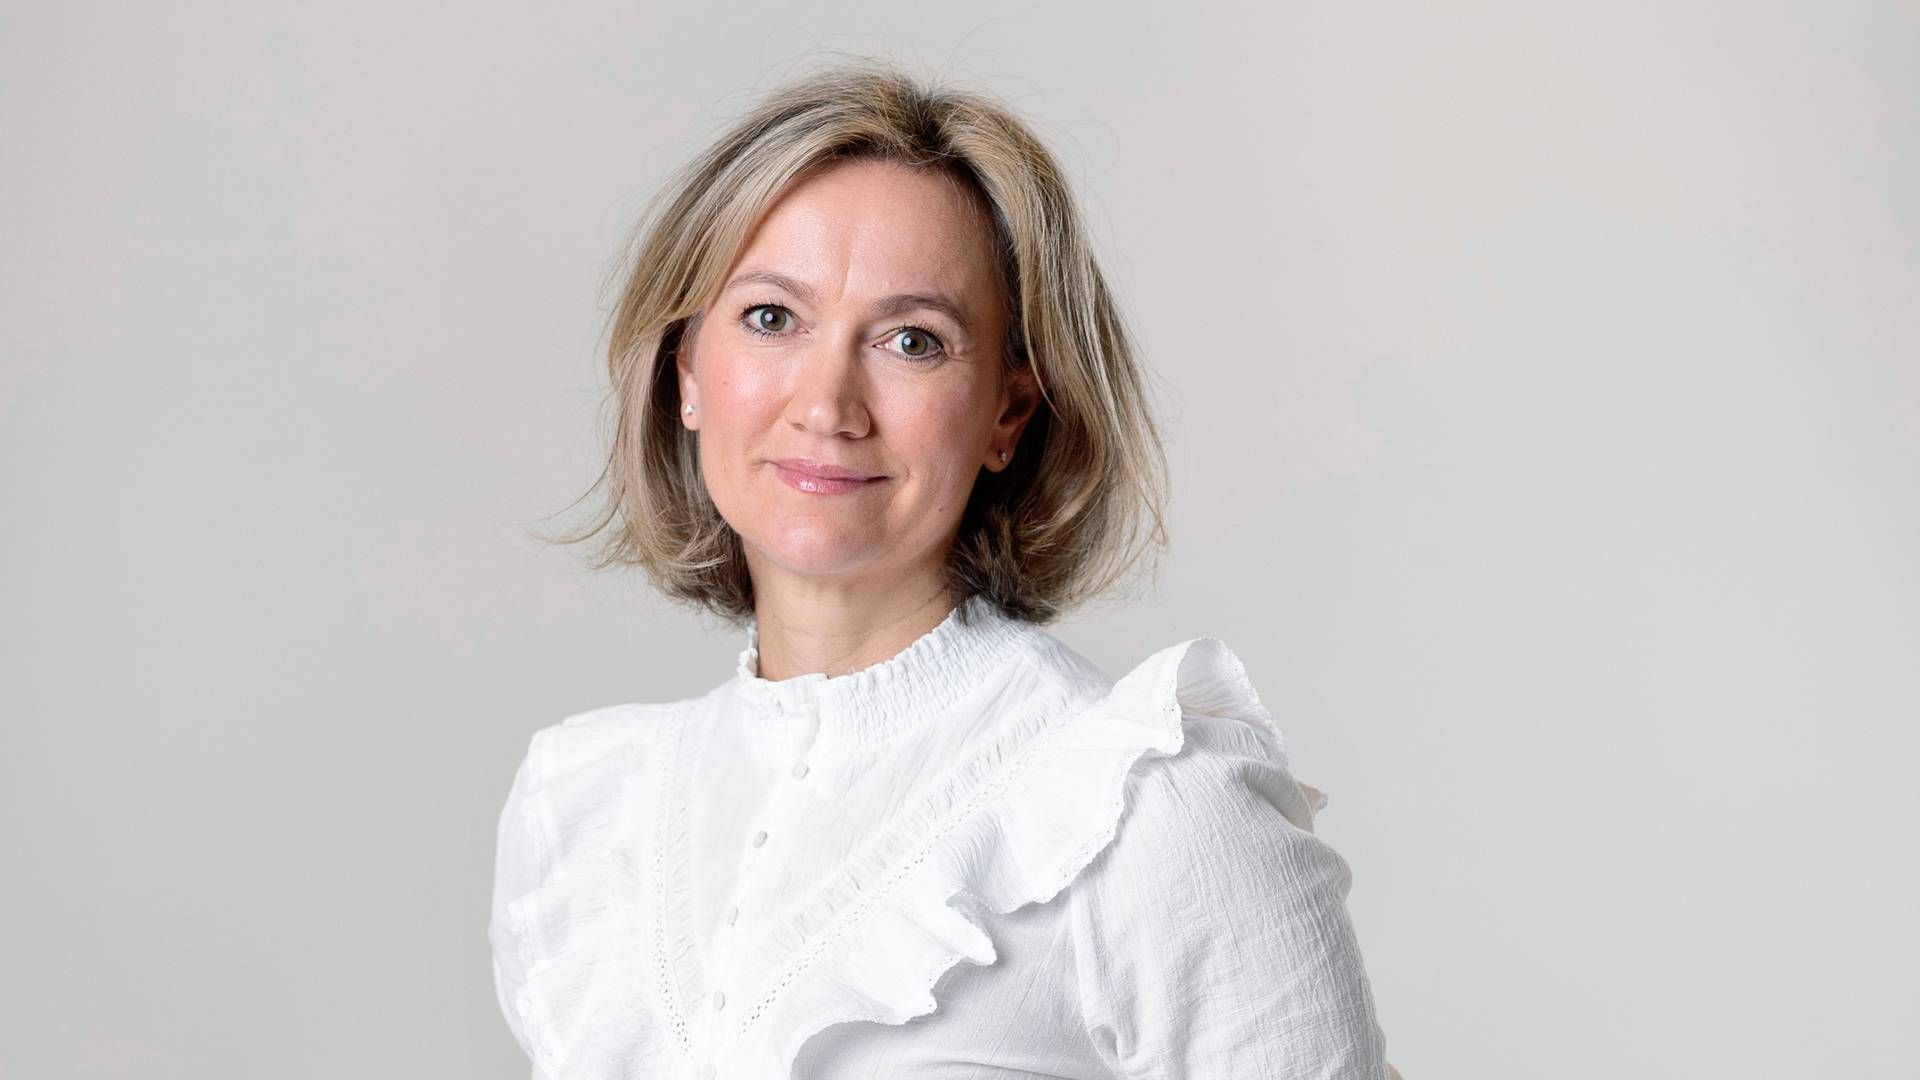 Det nye medieselskab får navnet Schibsted Media og får Siv Juvik Tveitnes som adm. direktør. Hun er i dag topchef for Schibsted News Media. | Foto: Pr/schibsted